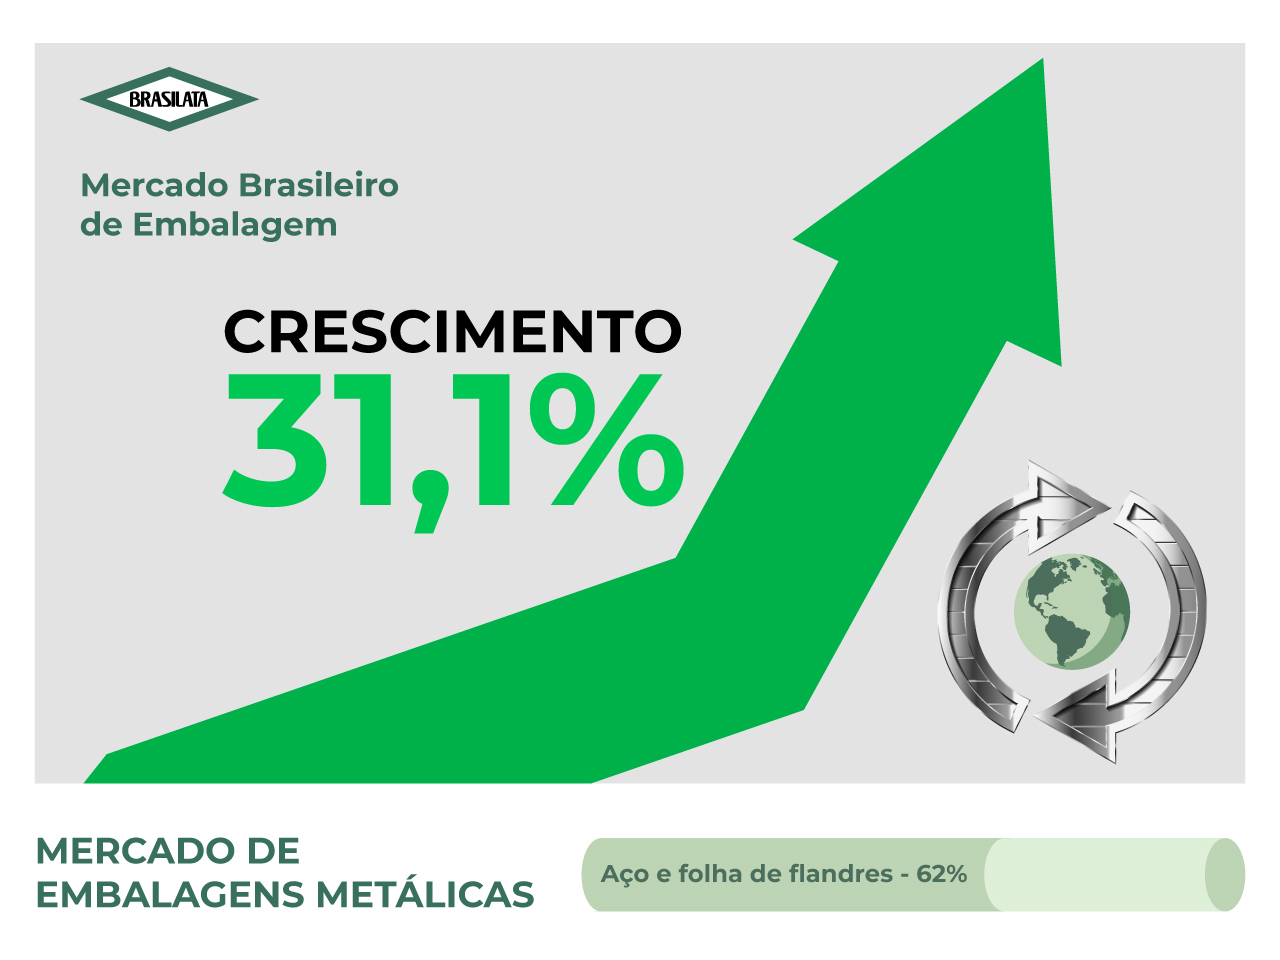 Brasilata contribui com o crescimento do setor de embalagens